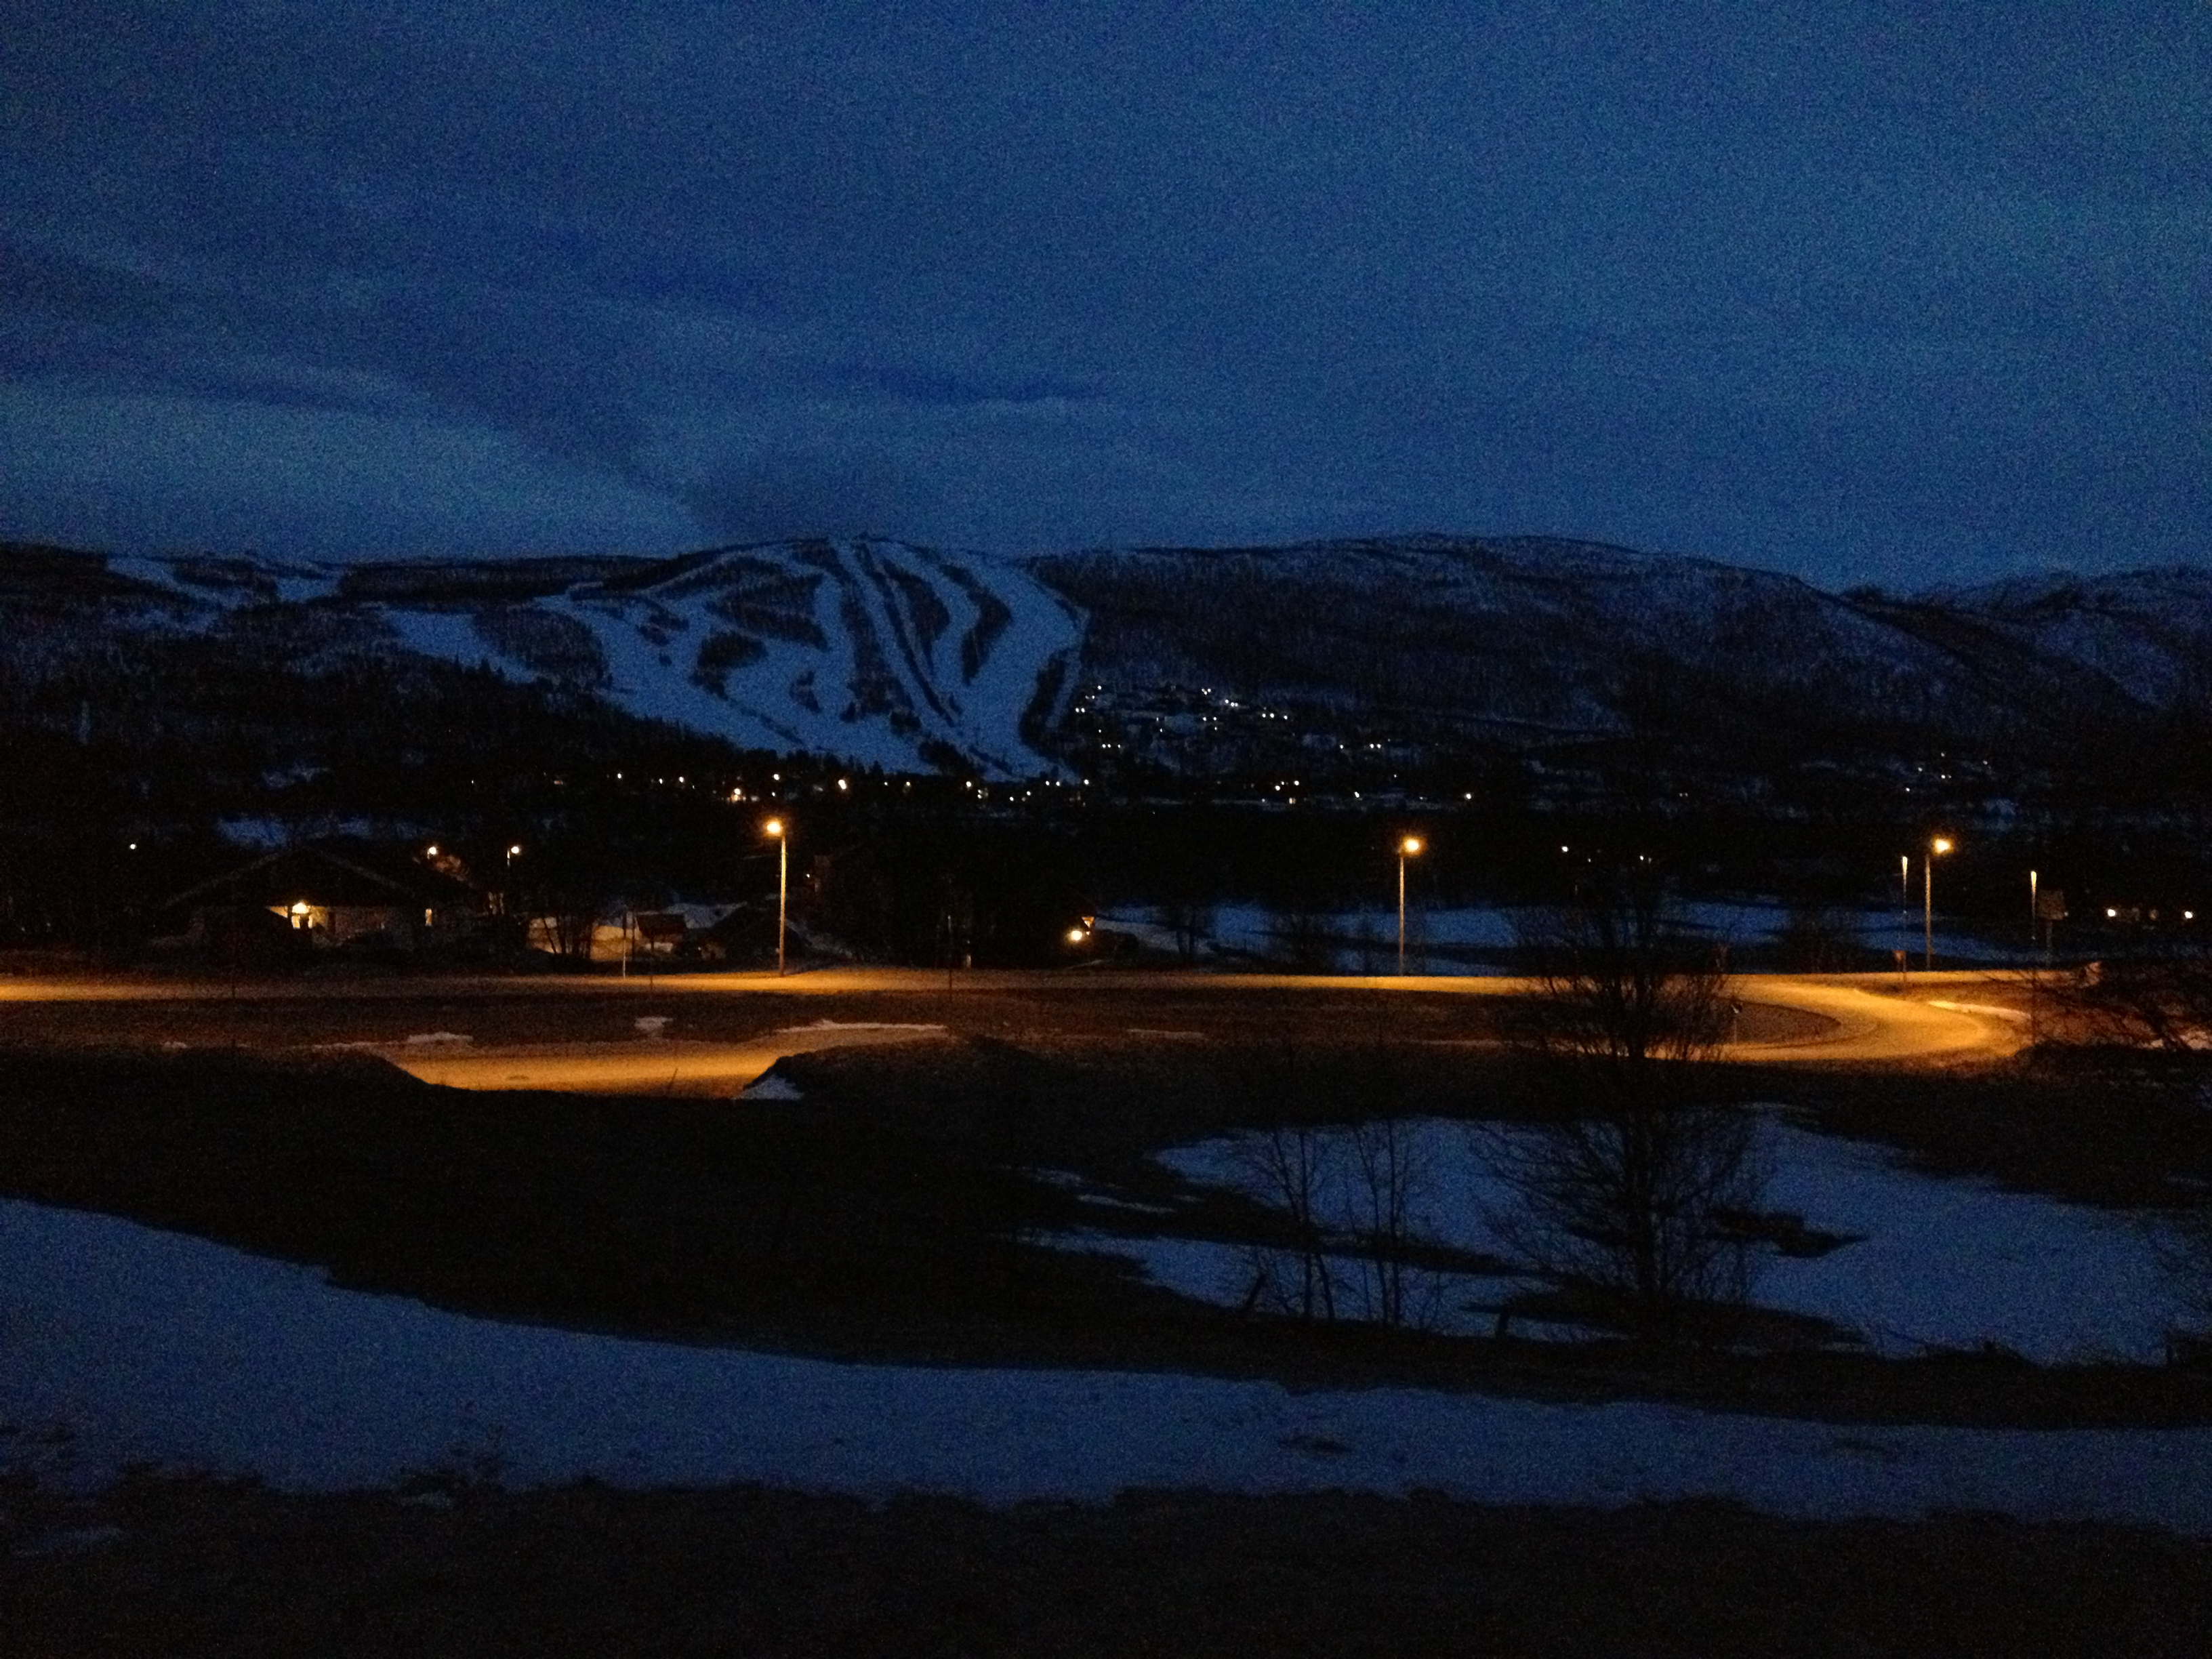 Geilo ski slopes in the dark